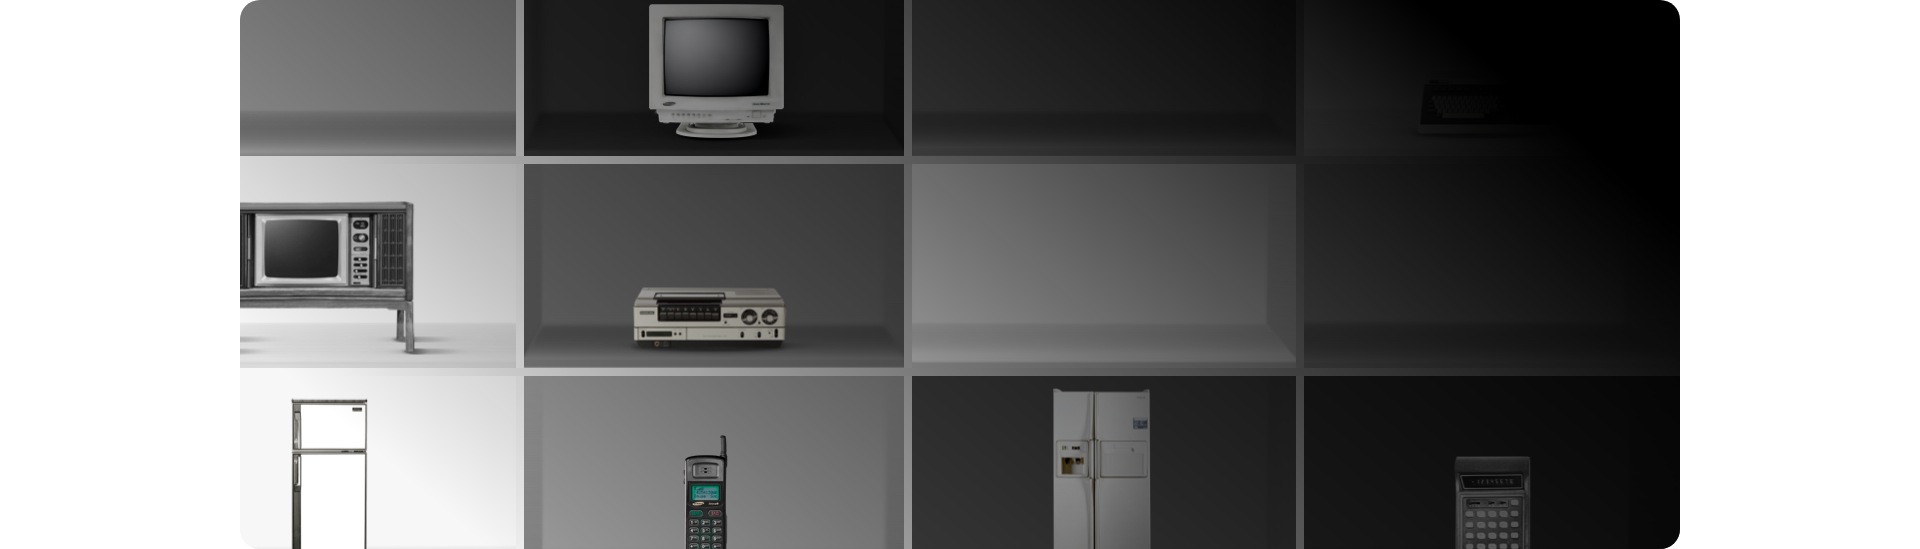 Dans un écran noir et blanc se trouvent d'autres produits Samsung tels qu'un moniteur, un téléphone portable, un poste de télévision, une radio, une machine à écrire et deux magnétoscopes. 